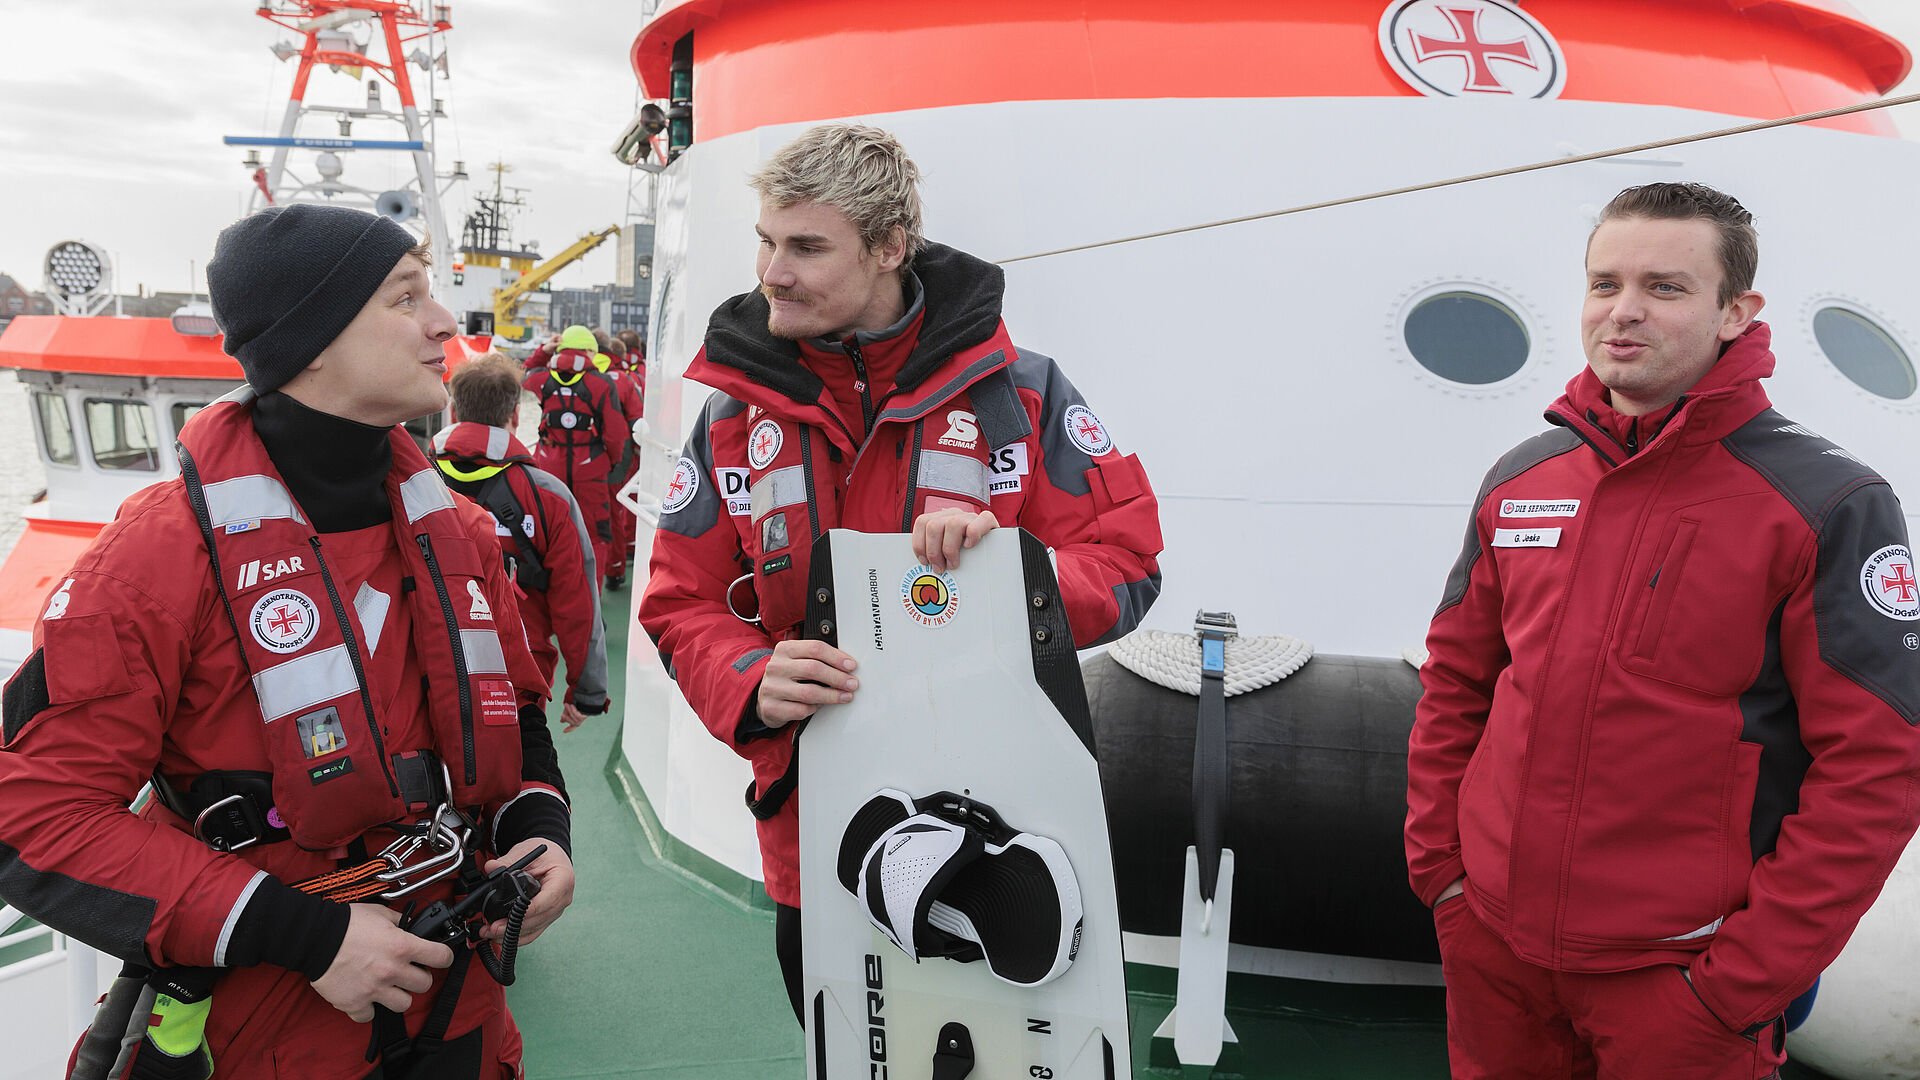 Kiteprofi Linus Erdmann ist an Bord eines Seenotrettungskreuzers im Gespräch mit zwei Seenotrettern.